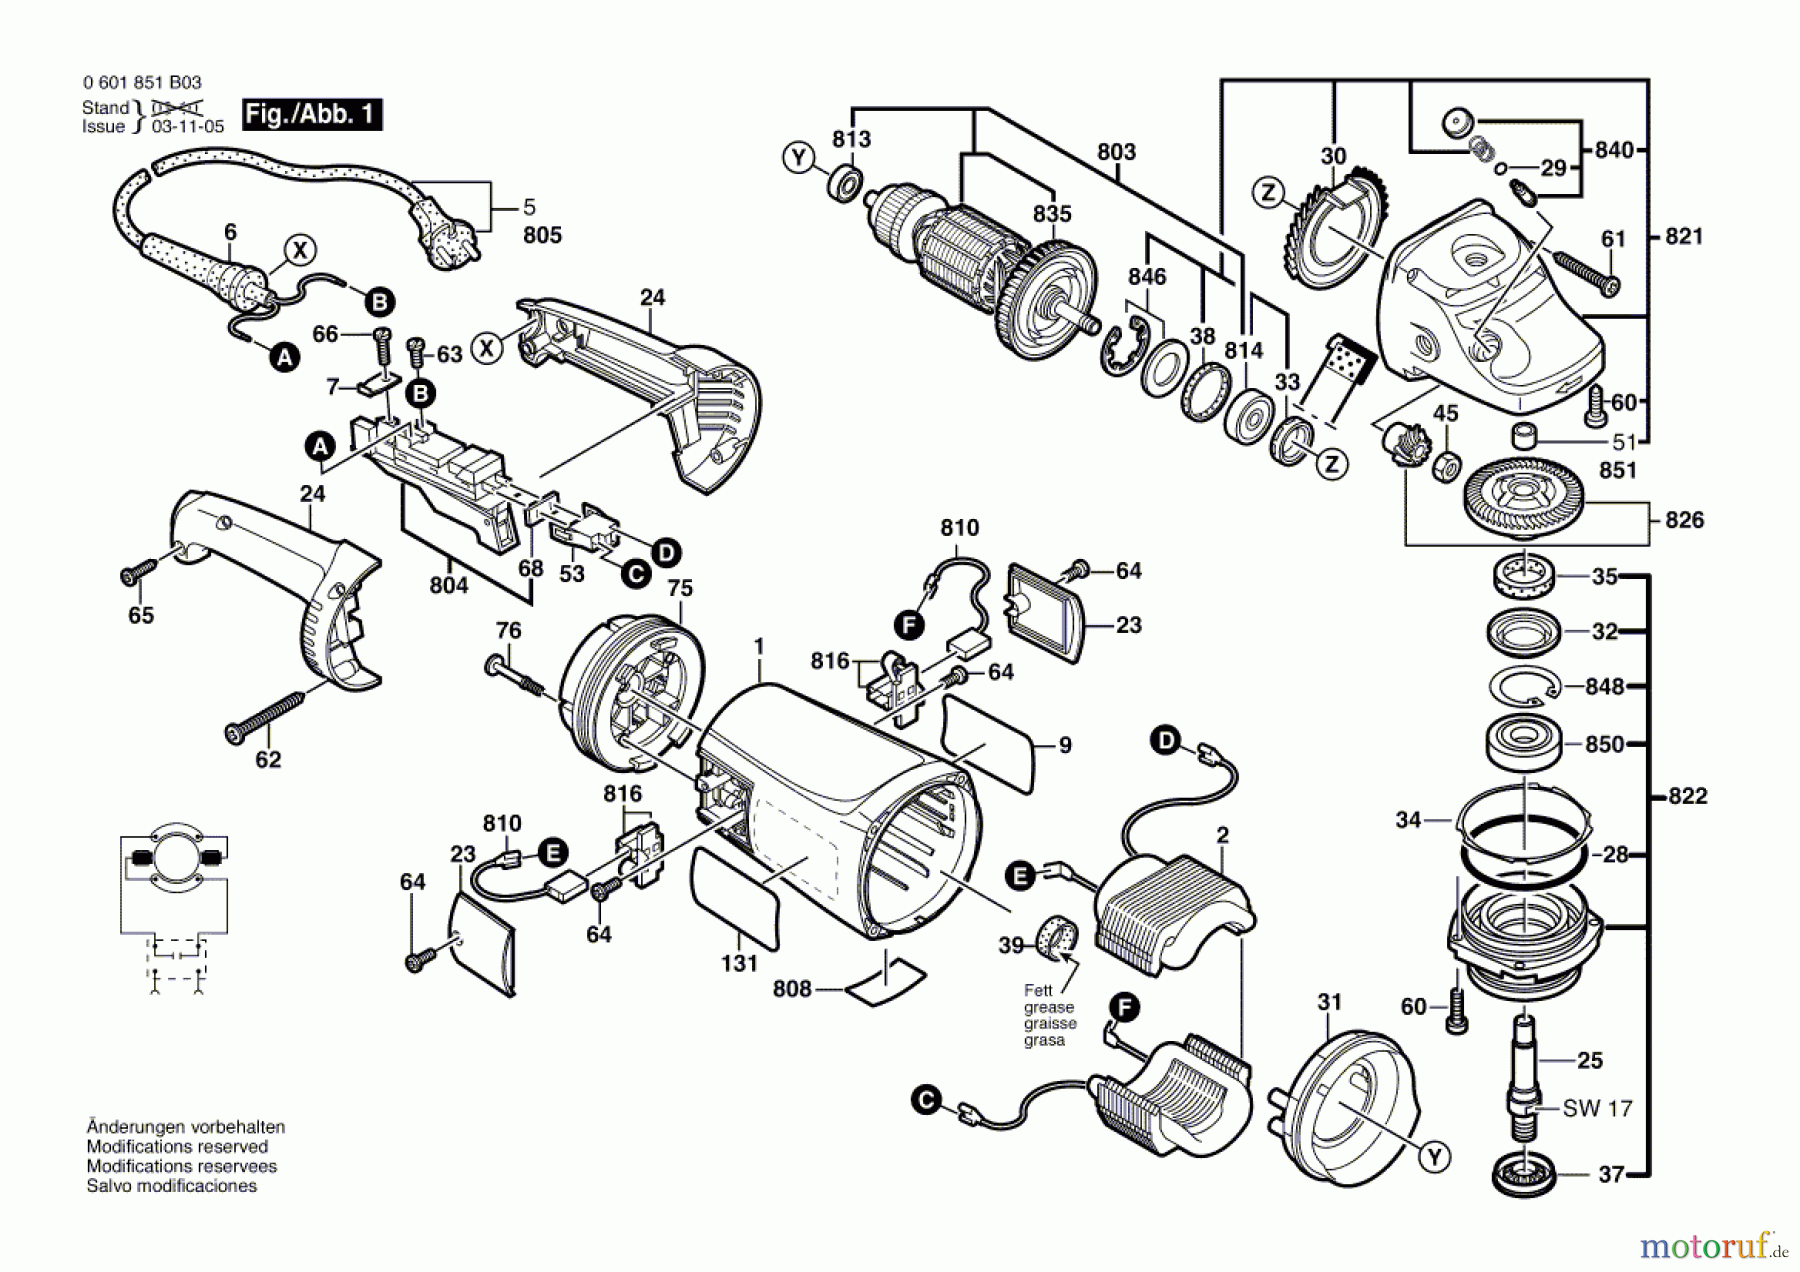  Bosch Werkzeug Winkelschleifer GWS 21-230 HV Seite 1